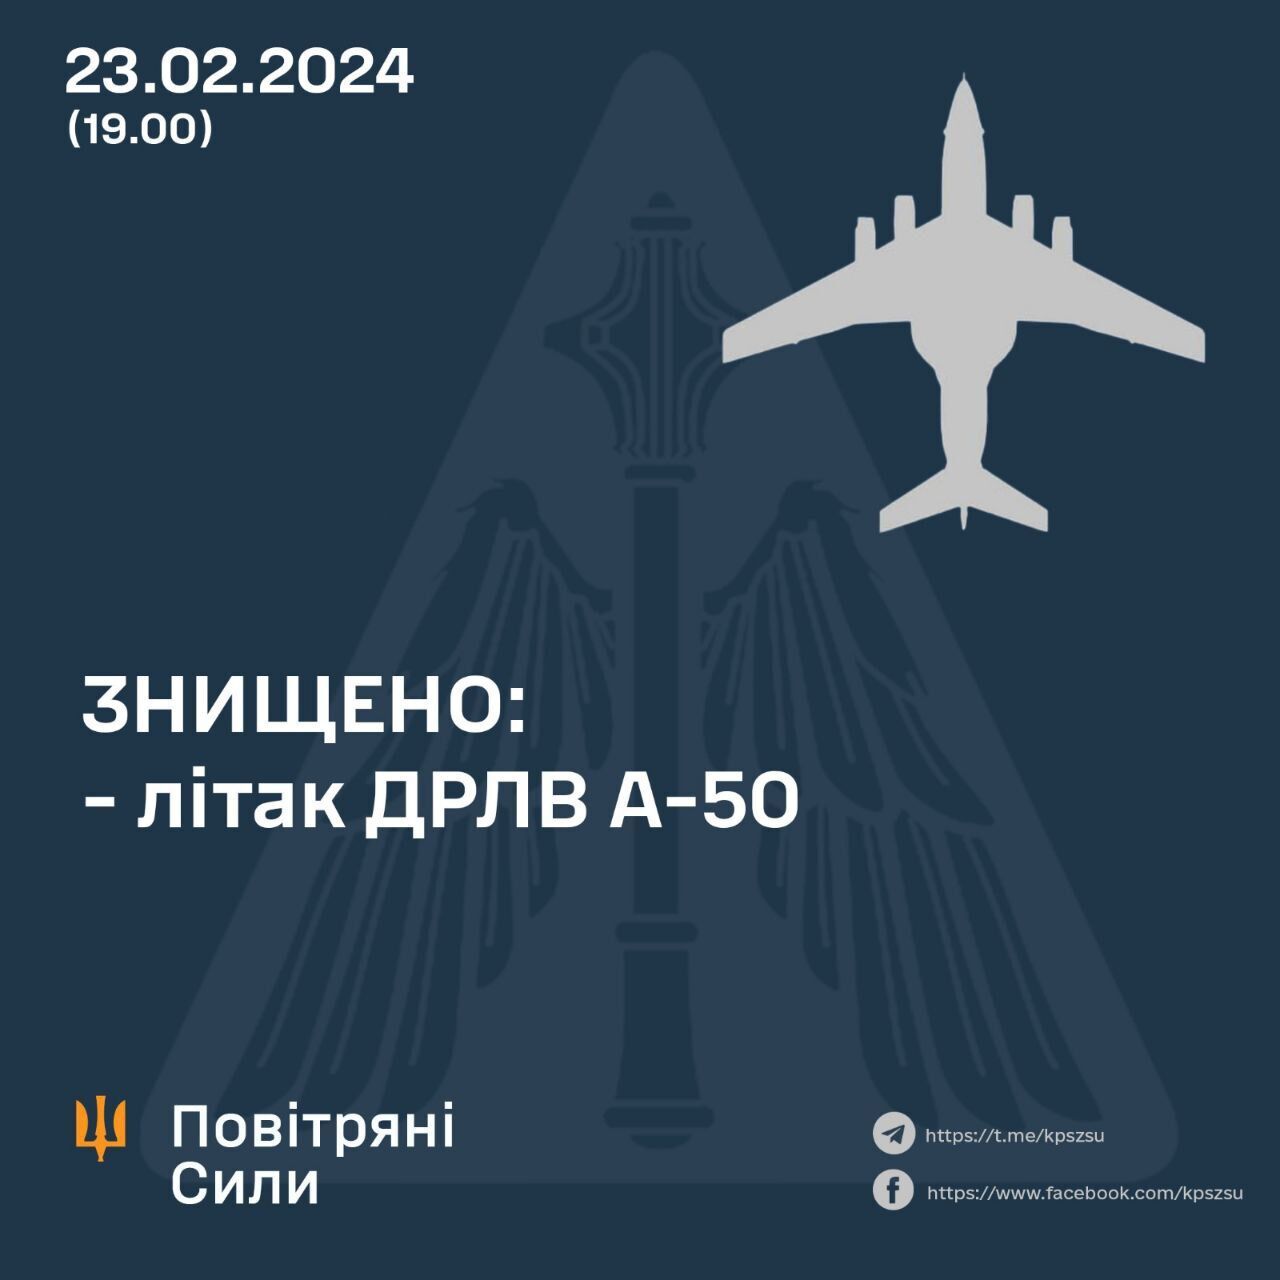 ГУР и Воздушные силы сбили российский самолет А-50У над Азовским морем (видео)